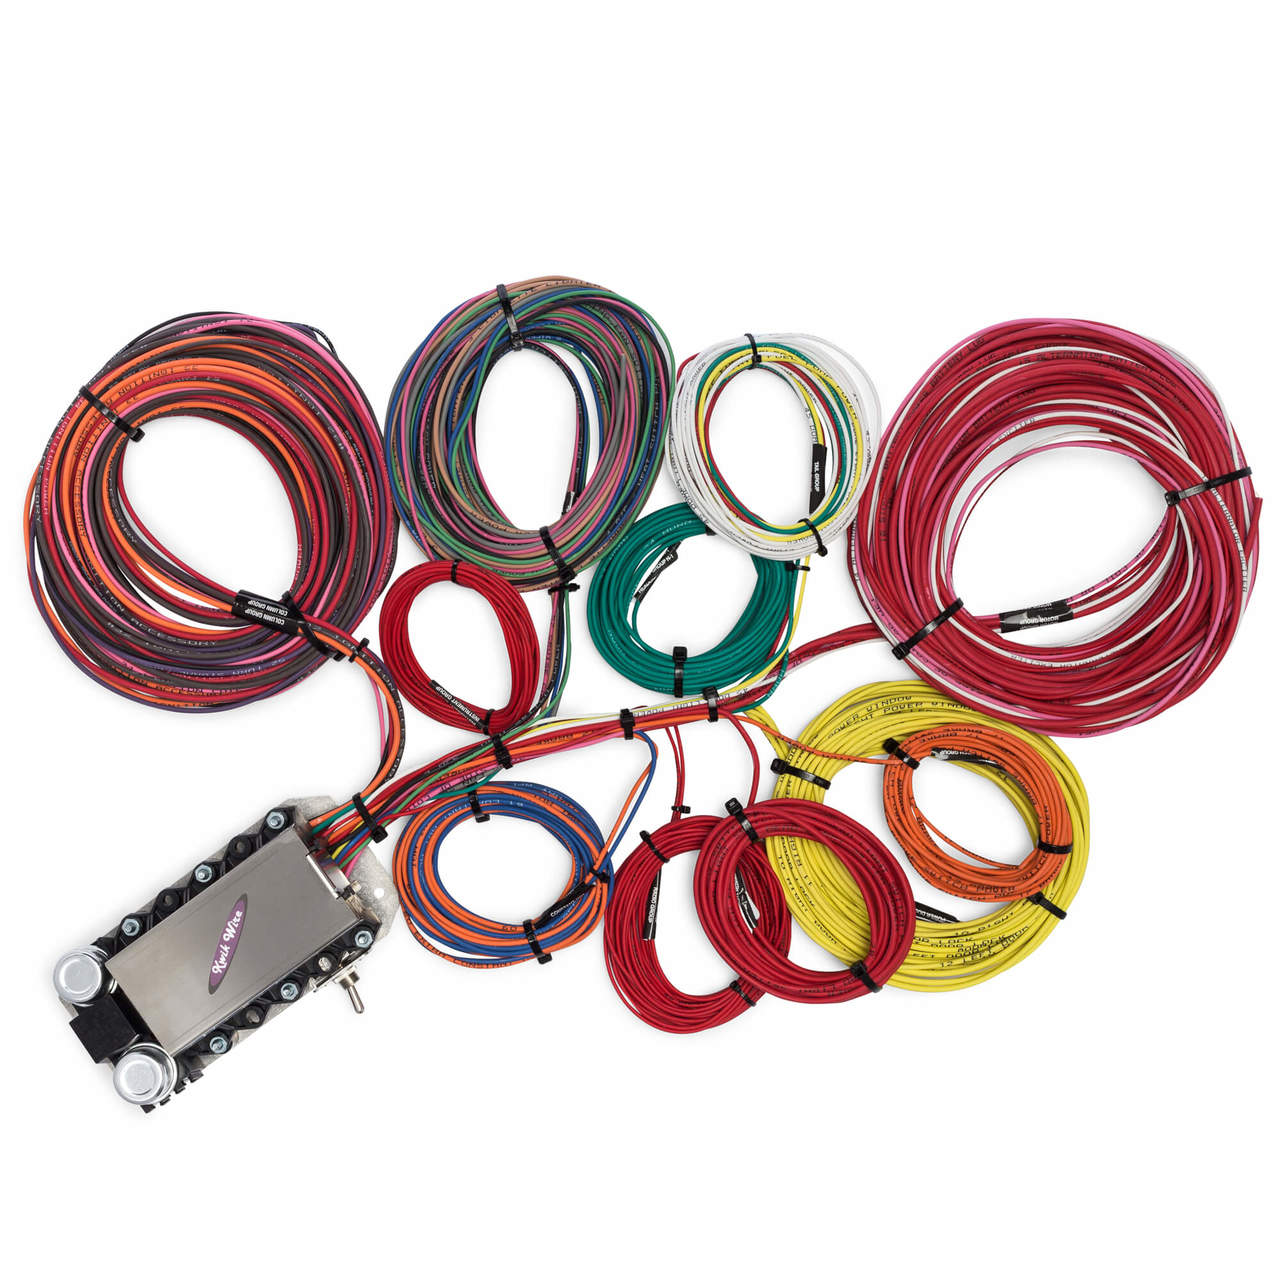 生まれのブランドで 【Montreux】SC VerUp版 No.9208 kit wiring